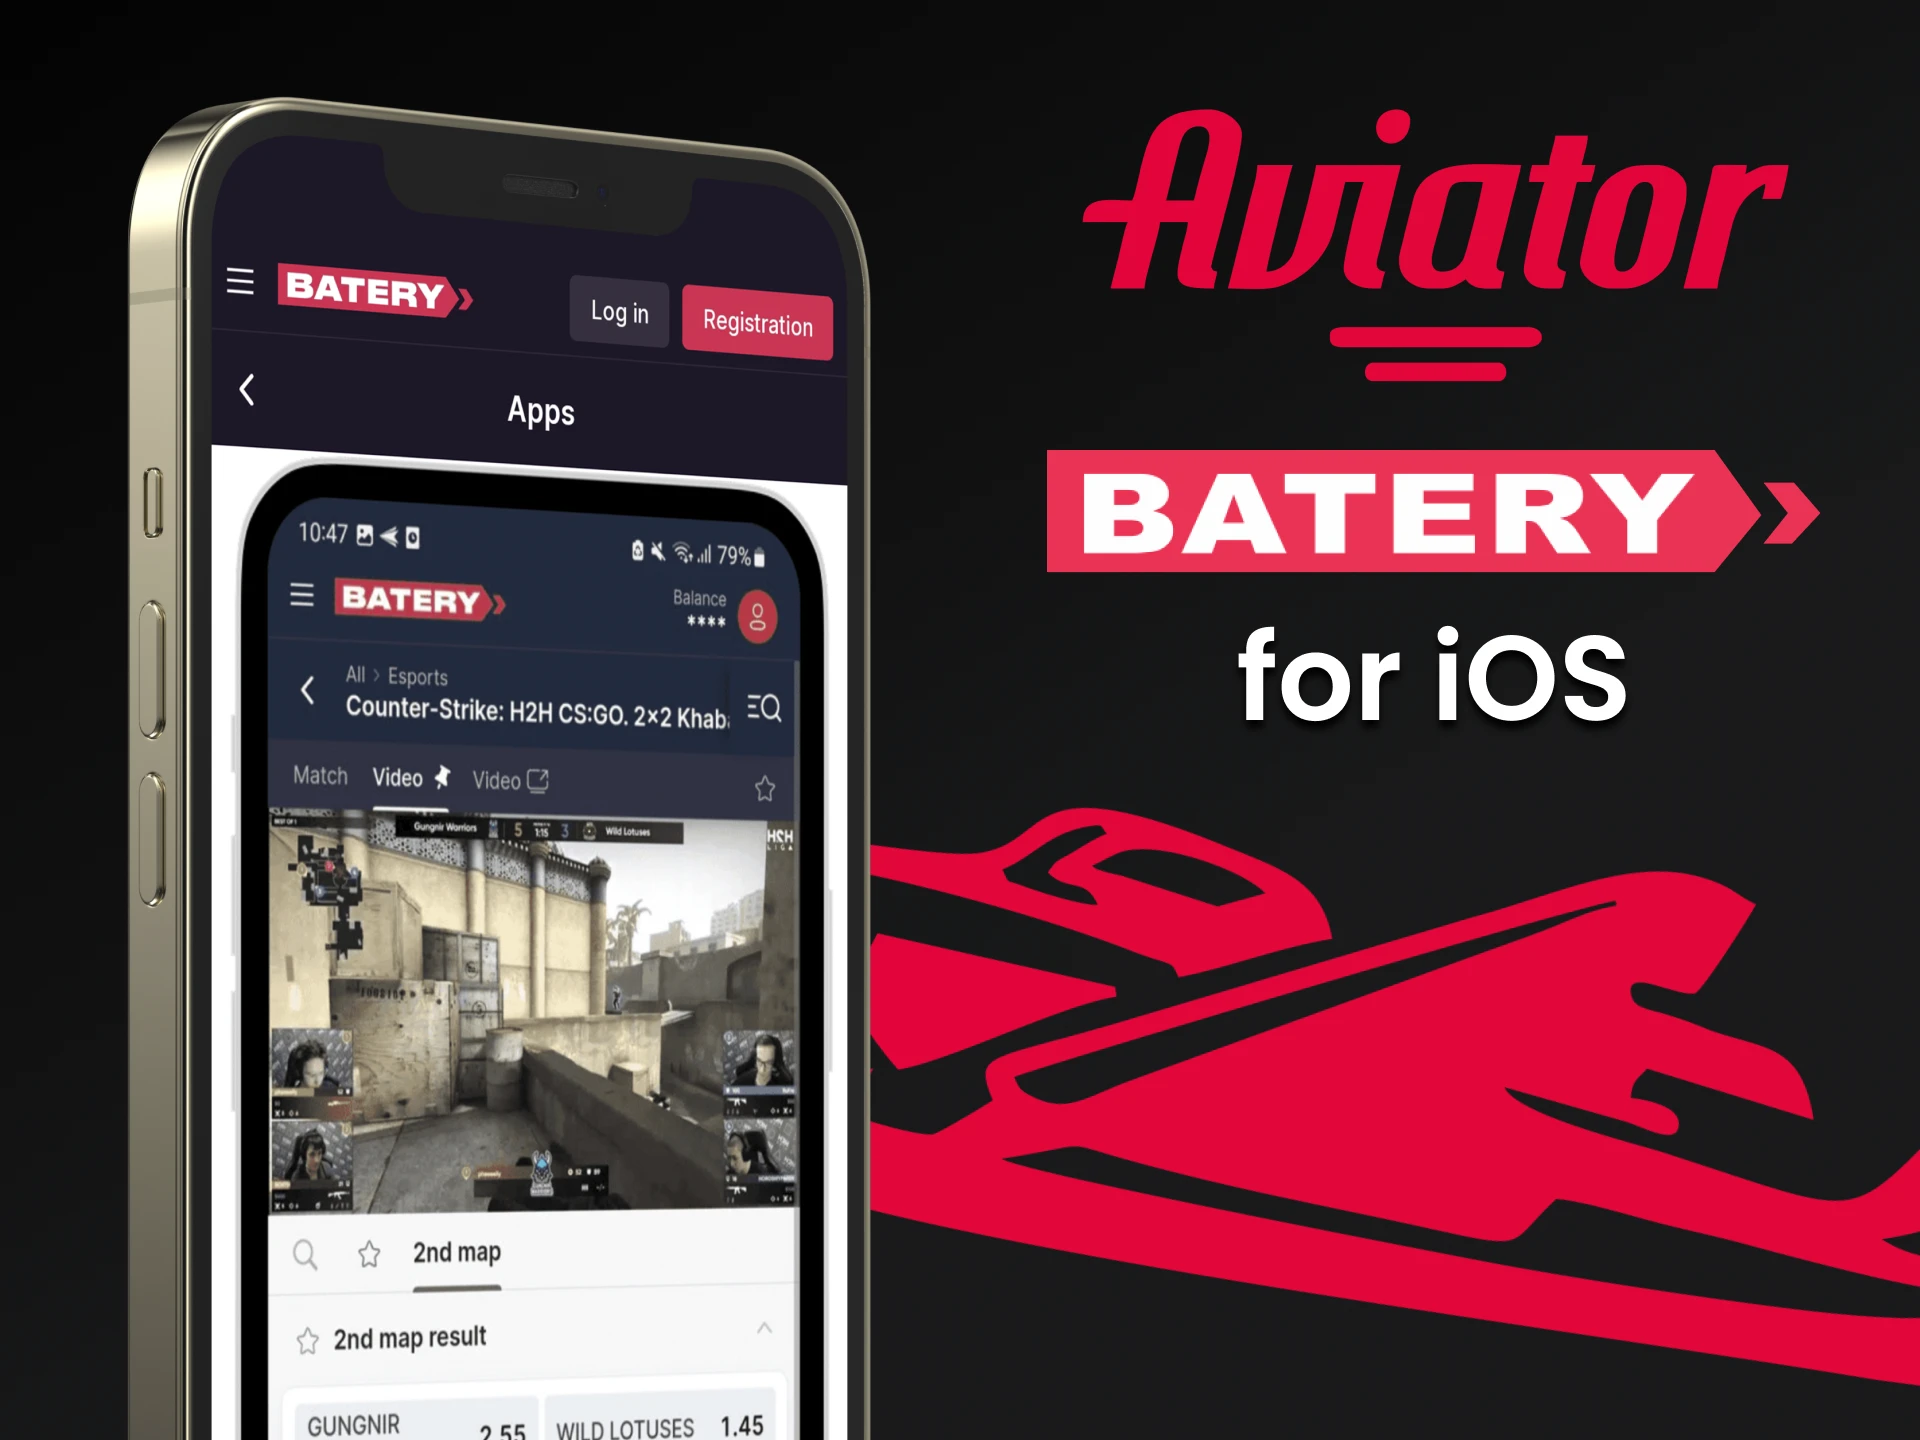 Baixe o aplicativo Batery no iOS para jogar Aviator no Batery.